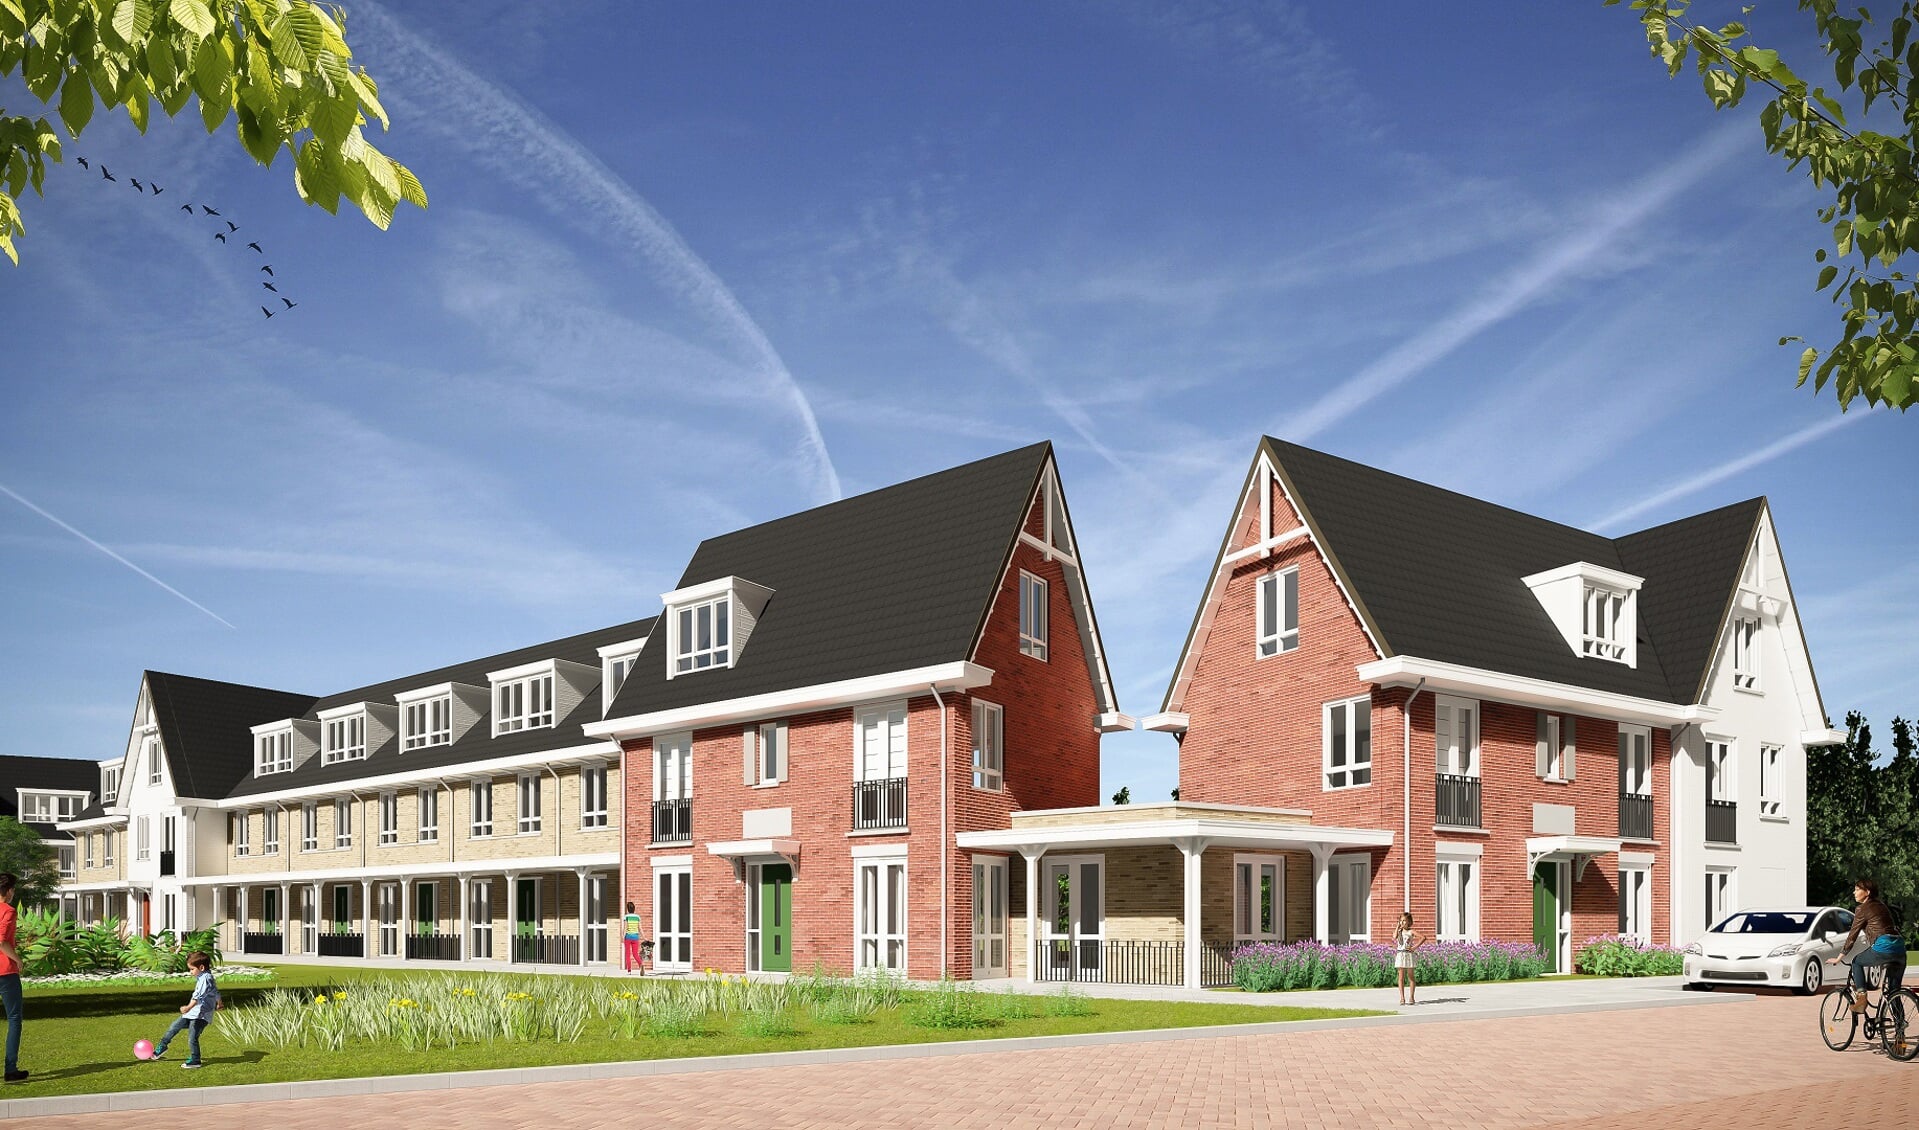 De volgende fase in Hooghkamer wordt gebouwd. Op de foto een impressie van de woningen Sonate, waarvan afgelopen zomer de bouw is gestart. | Foto: pr./ http://www.hooghkamer-voorhout.nl